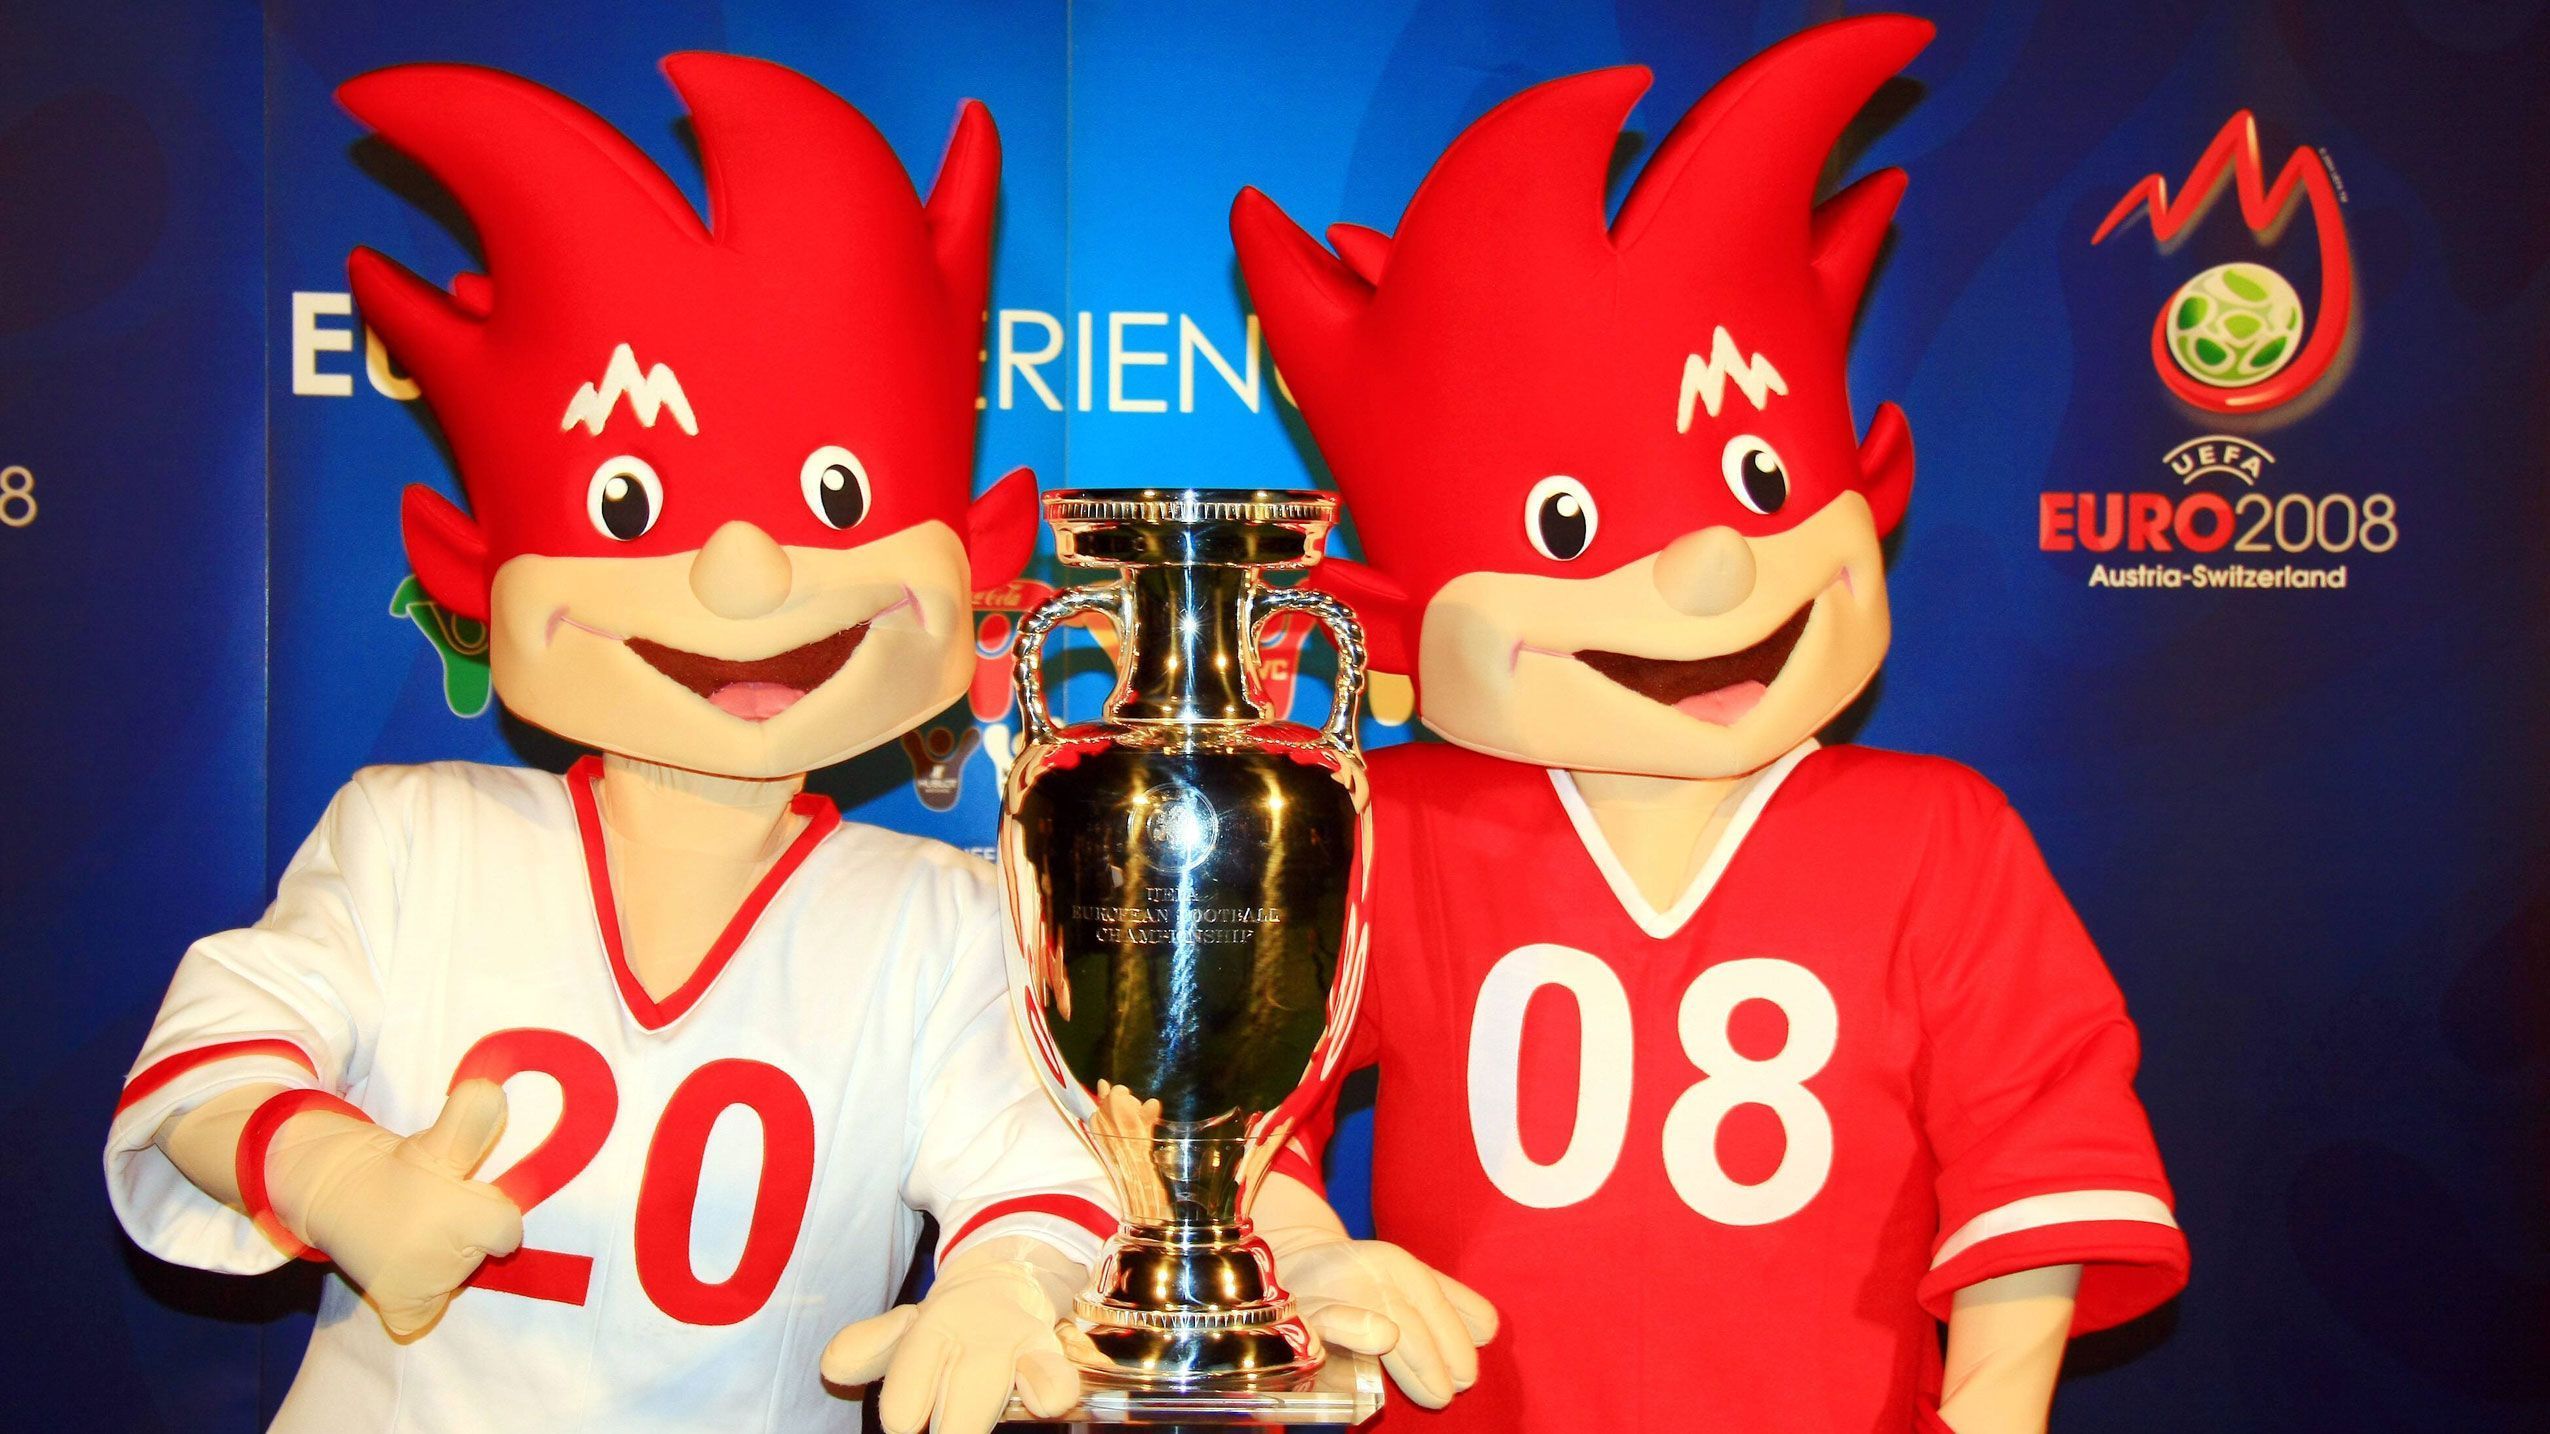 
                <strong>Österreich und Schweiz 2008: Trix und Flix</strong><br>
                Das erste Maskottchen-Duo war während des Turniers 2008. Die Zwillinge in den rot-weißen Trikots sollten vor allem das Mechandising ankurbeln - mit Erfolg. Die UEFA erzielte damals eine Rekordsumme von 800 Millionen mit dem Verkauf von Fanartikeln. Fun Fact: Entworfen wurden die beiden von "Warner Bros." und hatten durchaus Ähnlichkeiten zu "Disneys" Fix und Foxi. Dies hatte einige Diskussionen zur Folge. 
              